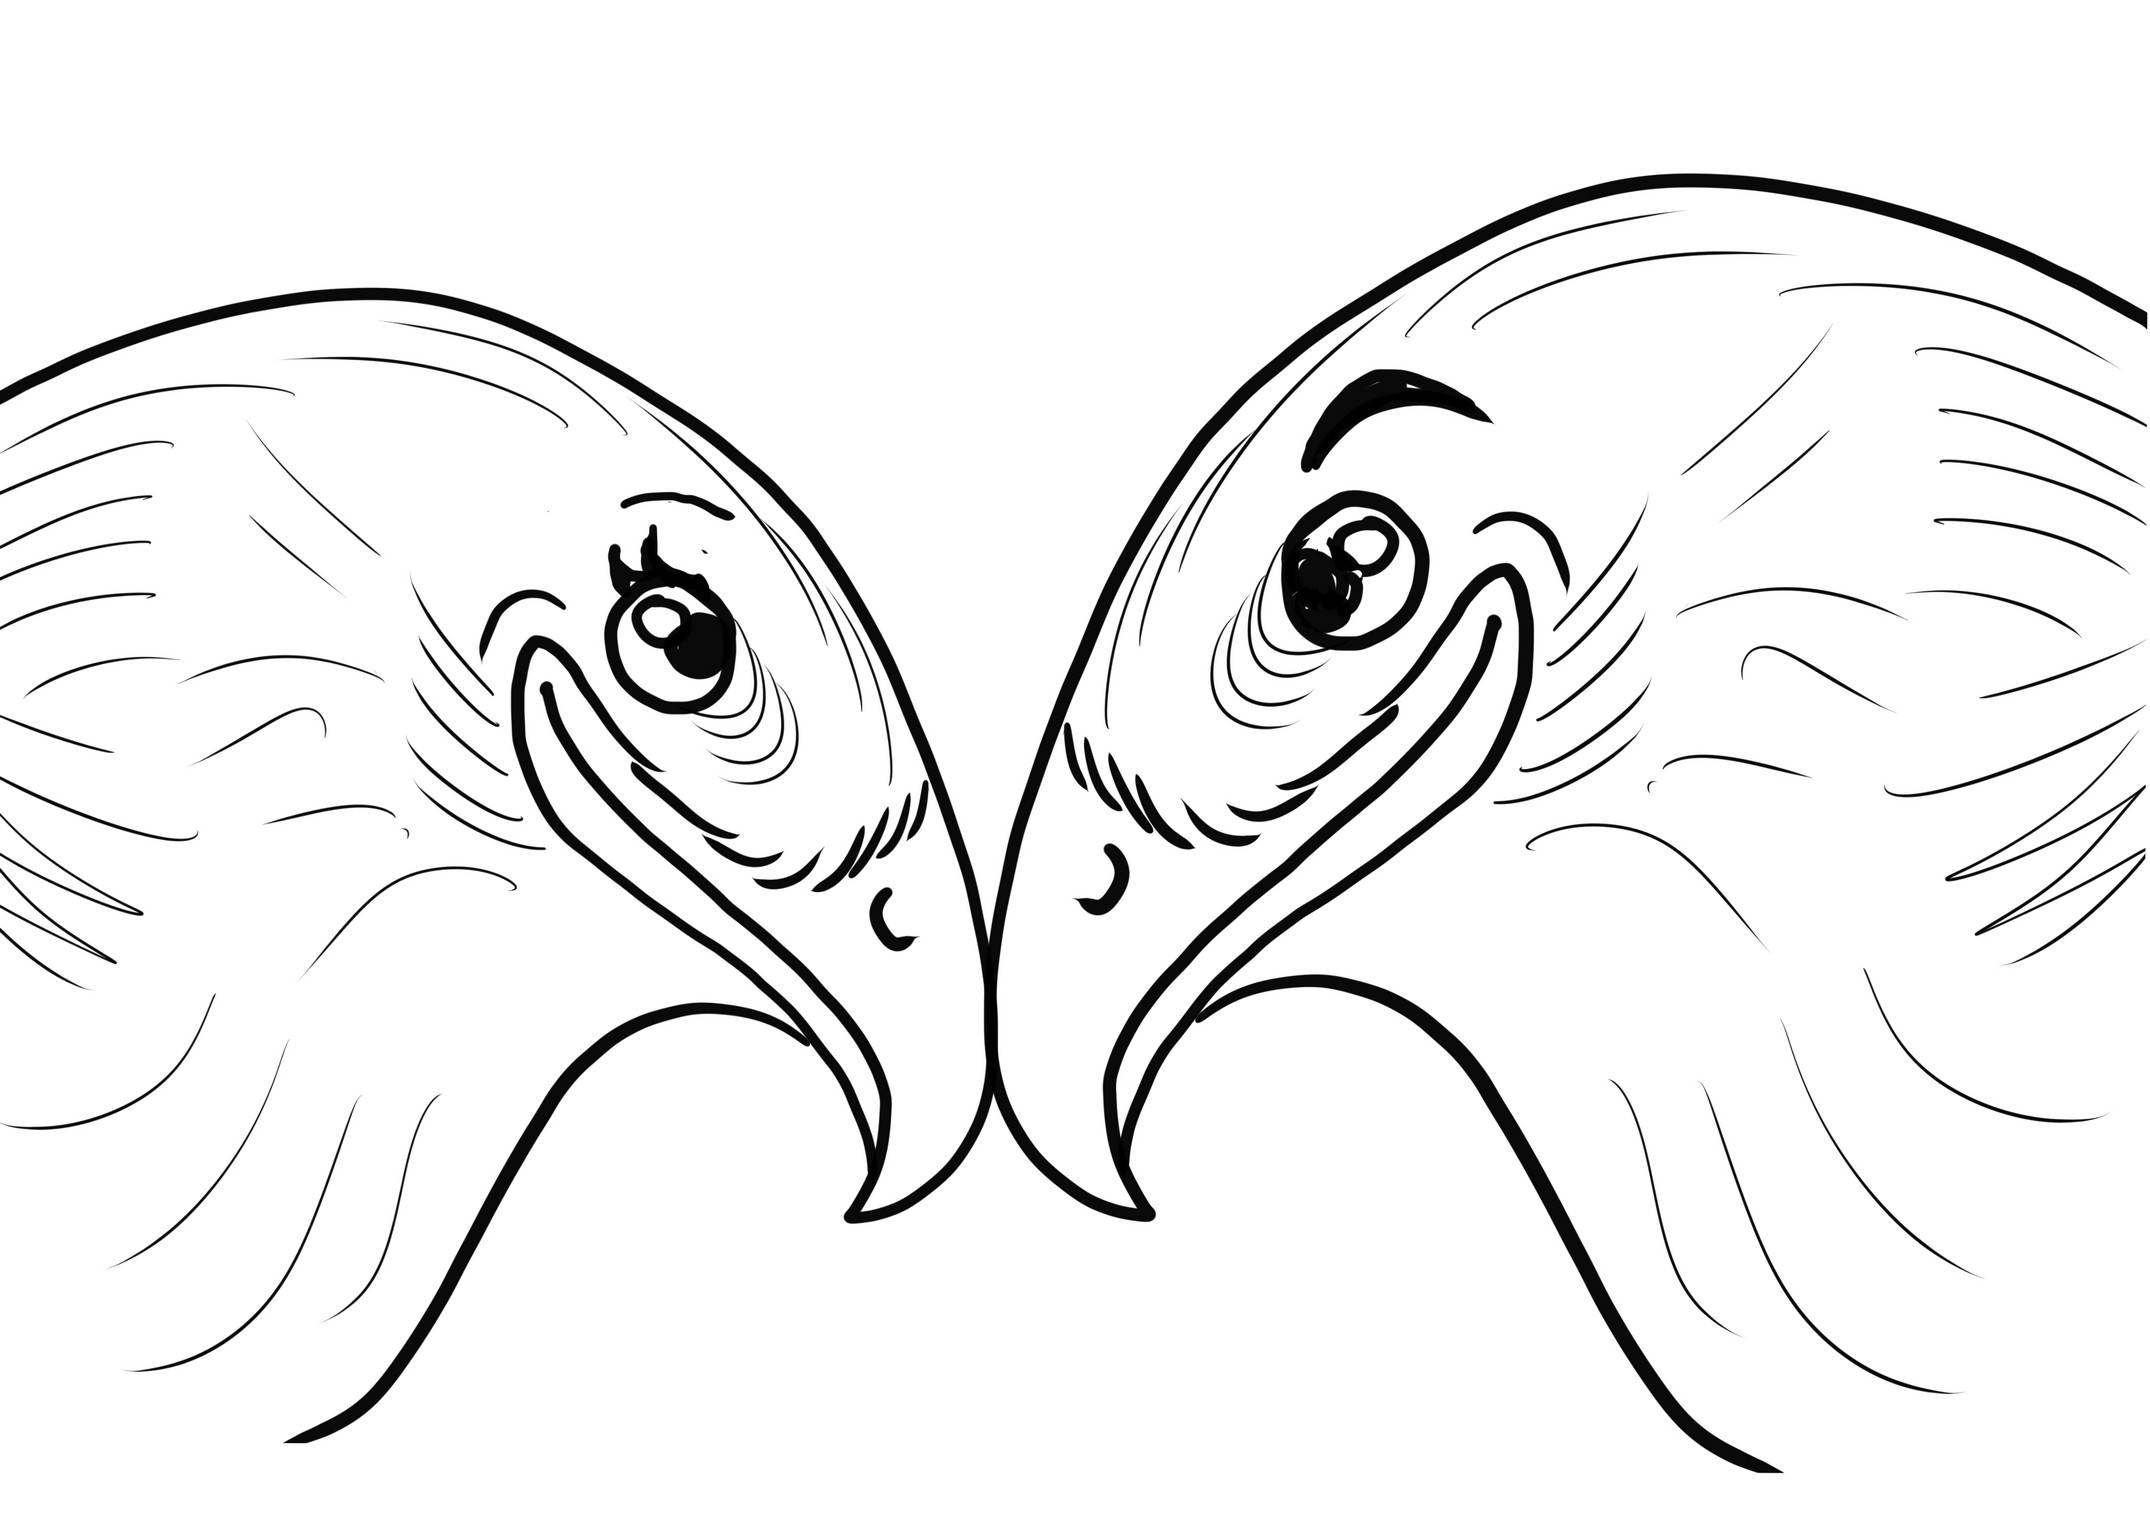 Dibujo para colorear de pareja de halcones enamorados